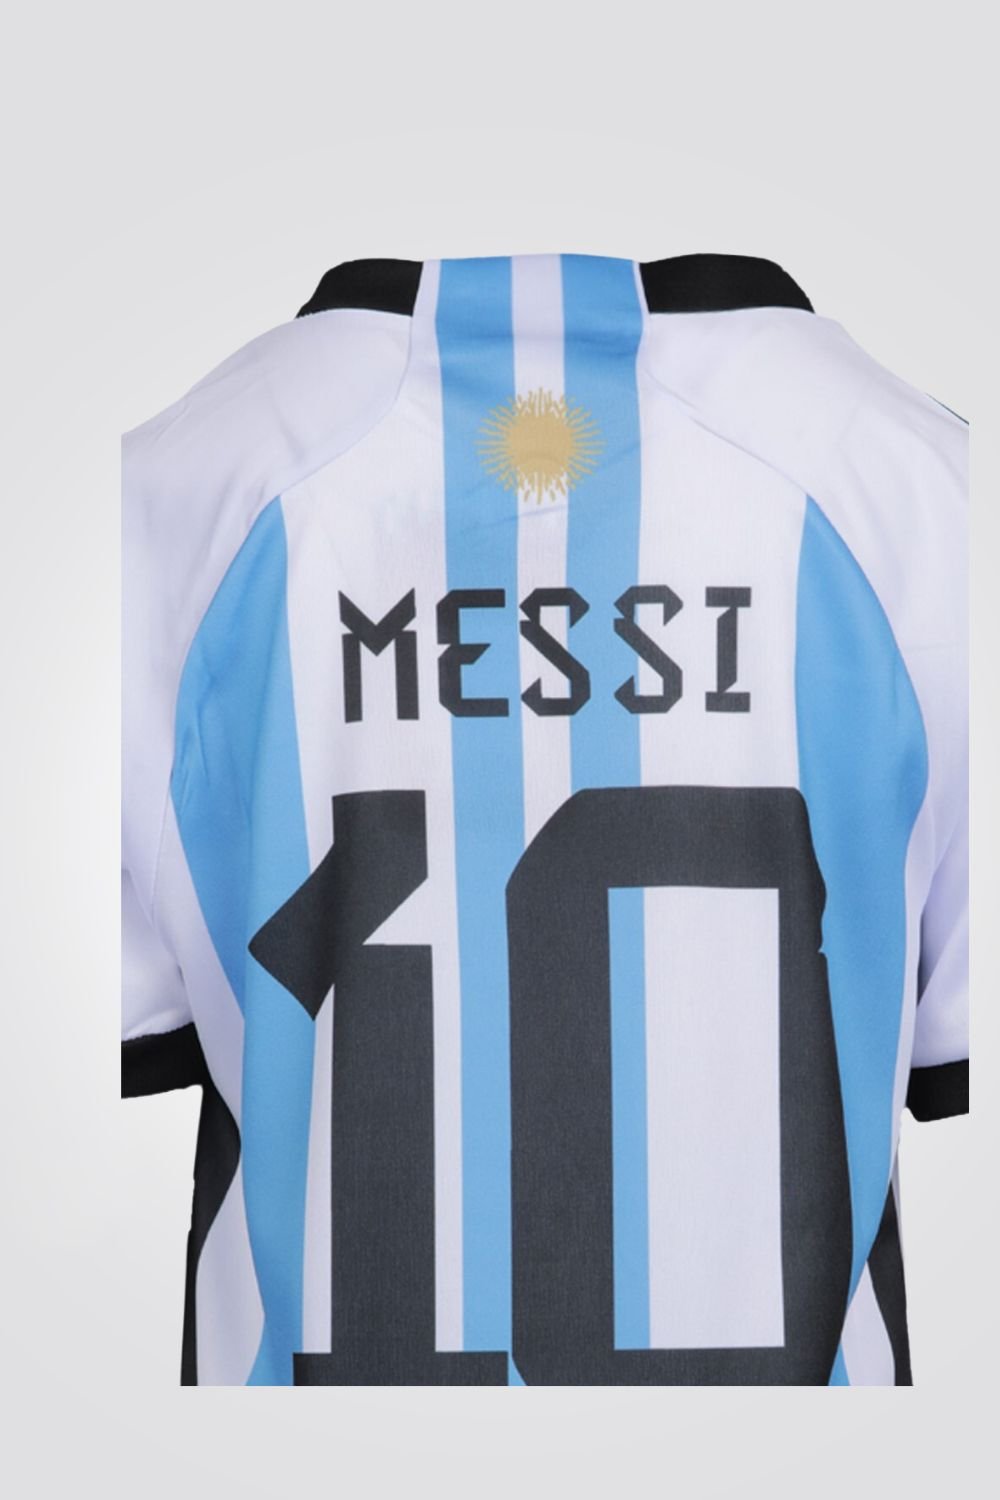 MASHBIR//365 - חליפת ילדים מדי ארגנטינה כדורגל מסי - MASHBIR//365